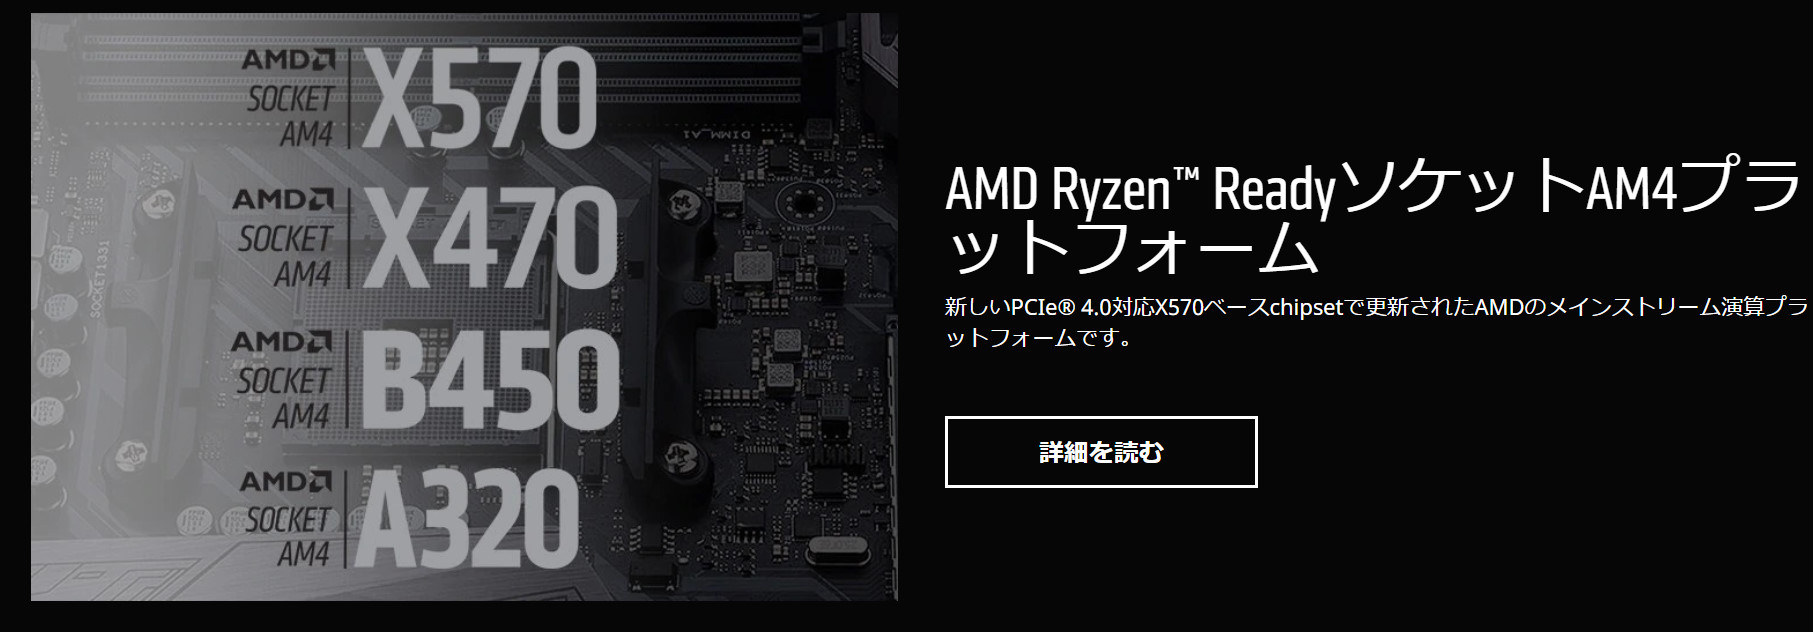 AMDのチップセット表